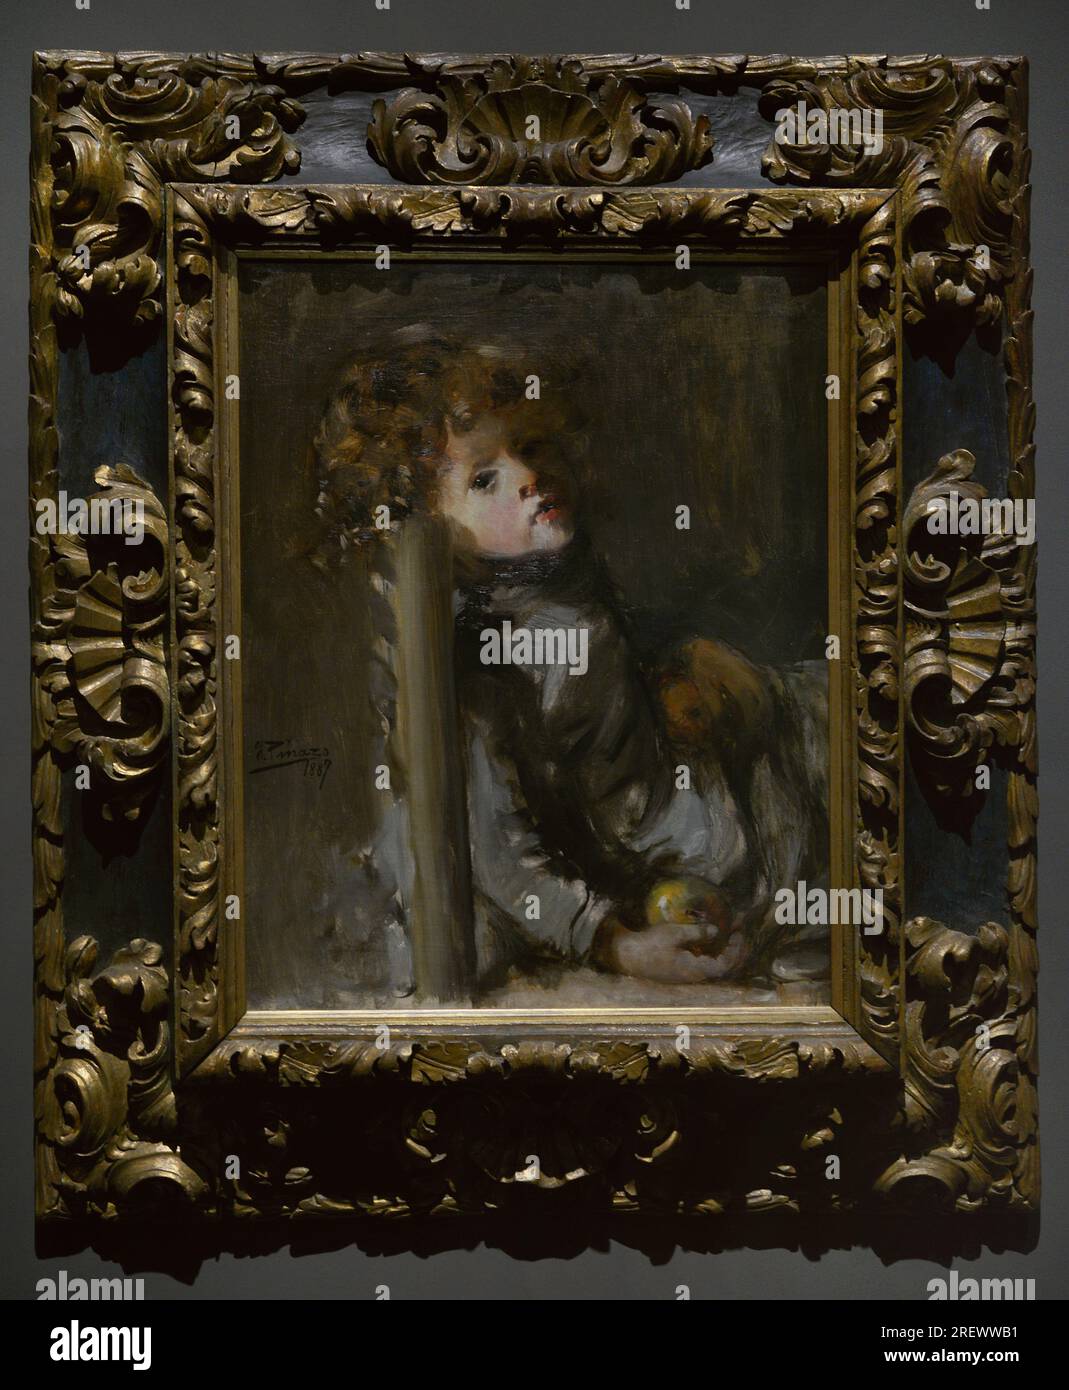 Ignacio Pinazo (1849-1916). Spanish painter. The Artist's Son, Ignacio, Seated, 1887. Oil on canvas, 65 x 53 cm. Prado Museum. Madrid. Spain. Stock Photo